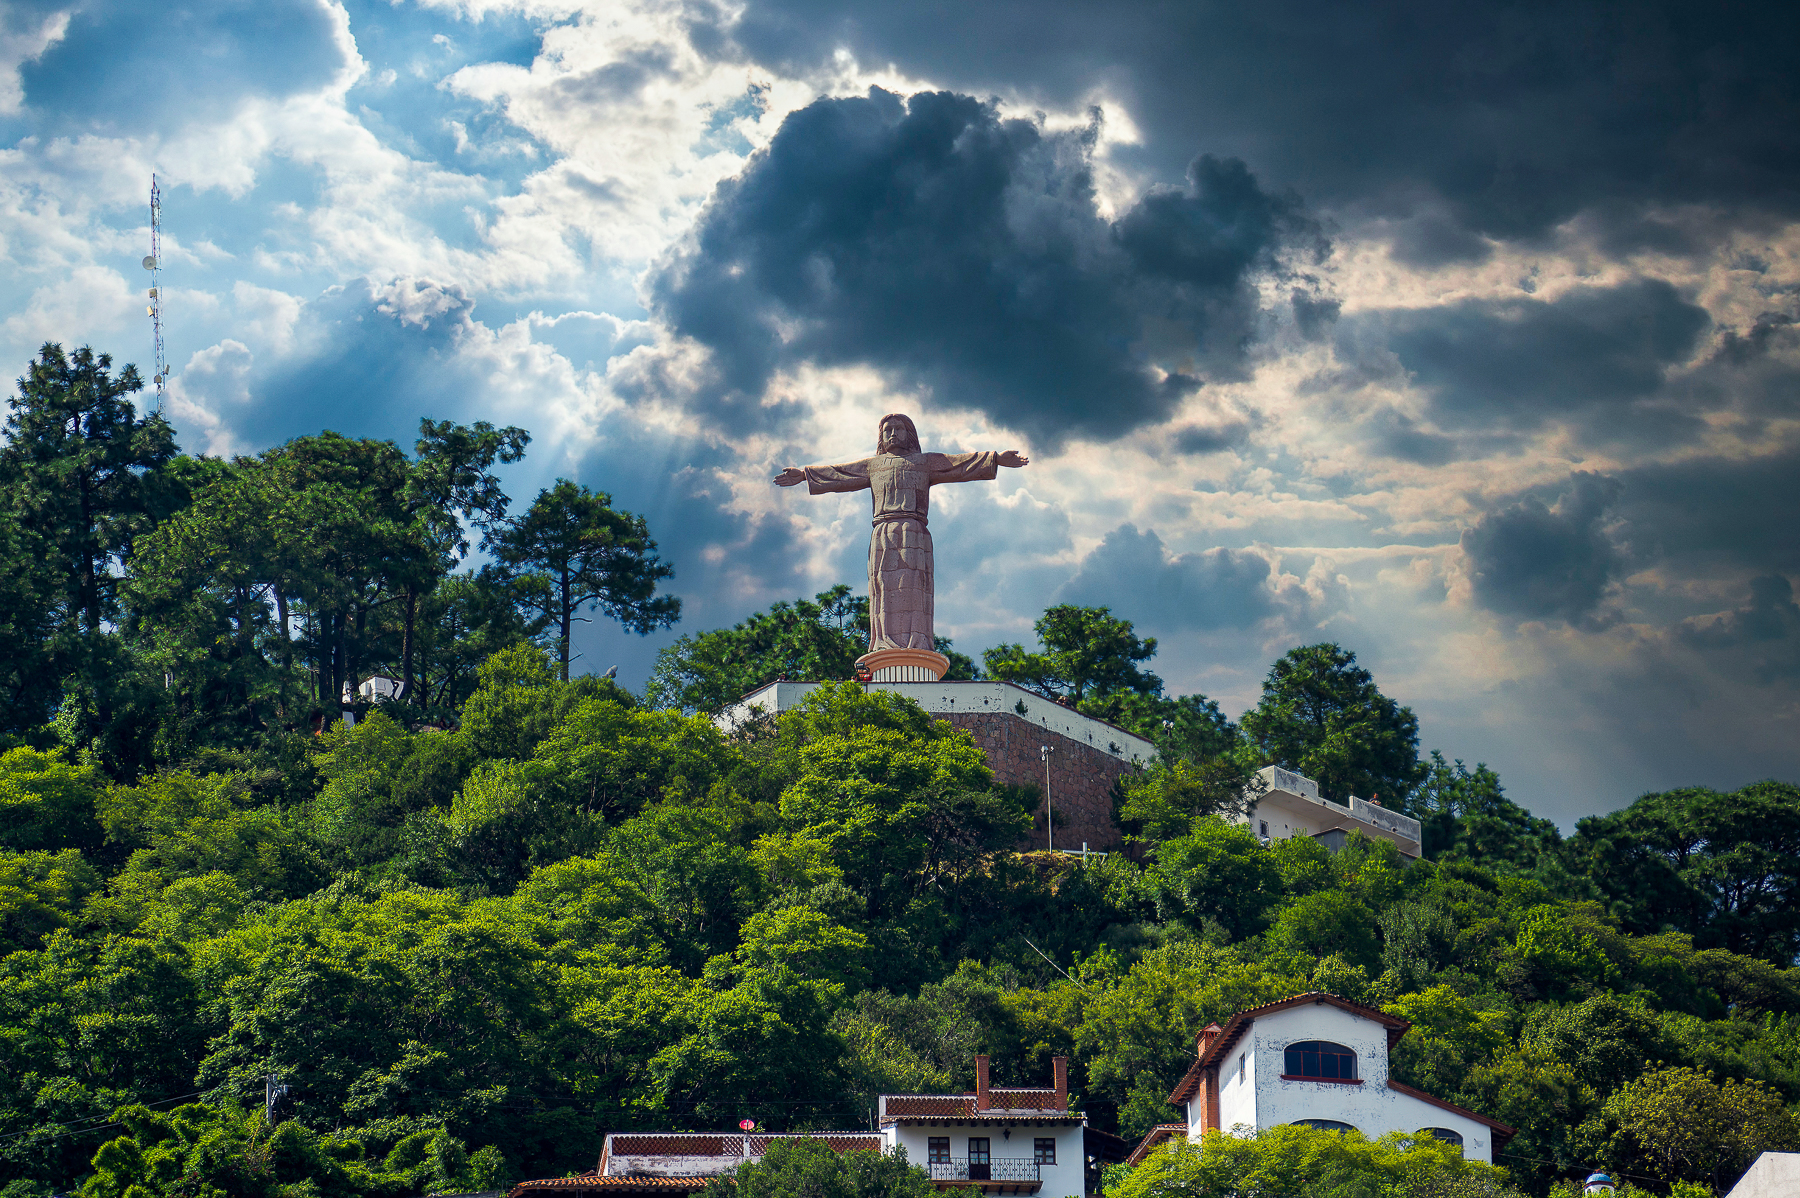 Mirador del Cristo, Cerro del Atache - Reto La mejor foto de México